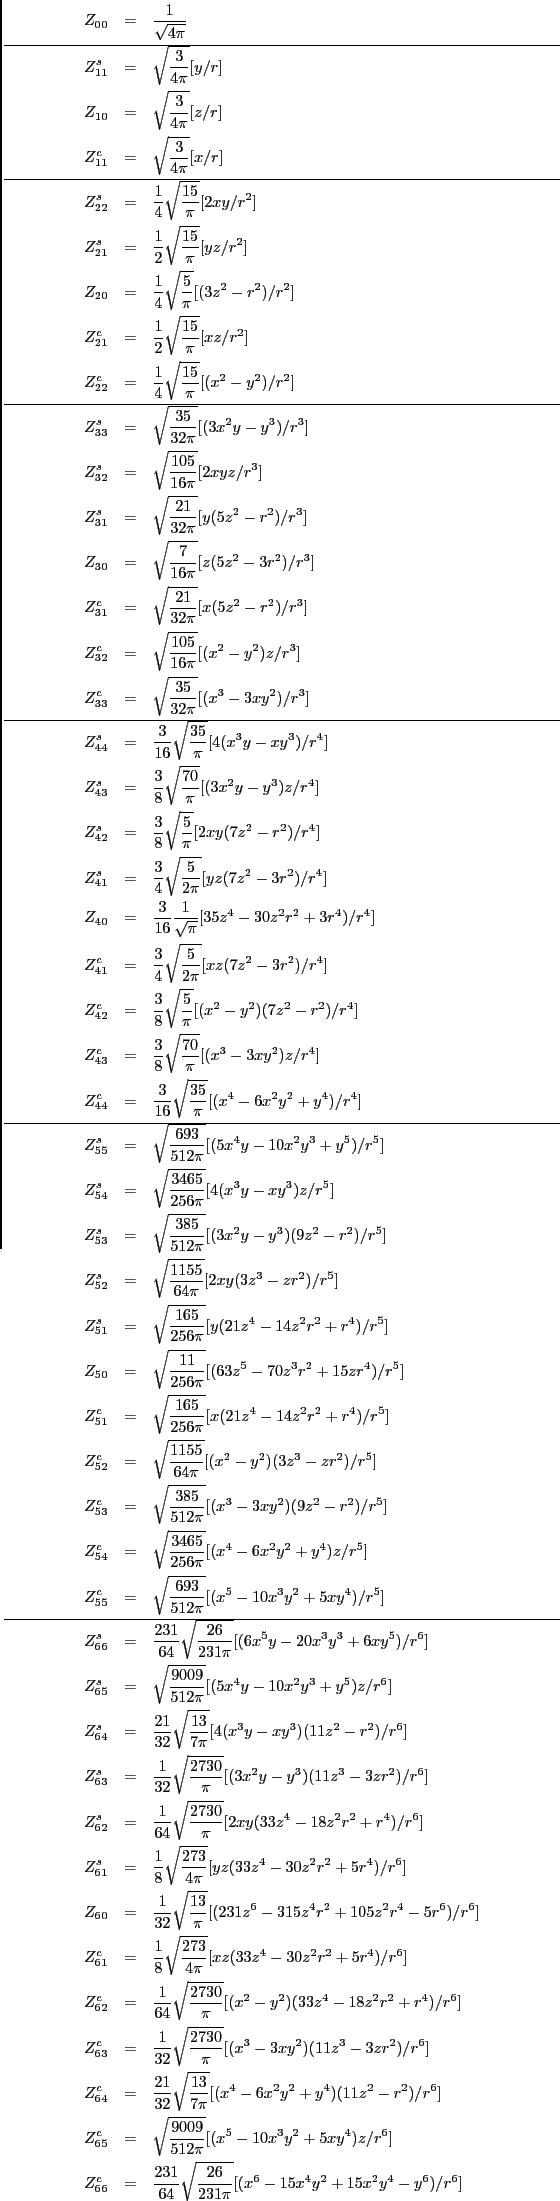 \begin{eqnarray*}
Z_{00}&=&\frac{1}{\sqrt{4\pi}}\\
\hline
Z^s_{11}&=&\sqrt{\fra...
...1}{64}\sqrt{\frac{26}{231\pi}}[(x^6-15x^4y^2+15x^2y^4-y^6)/r^6]
\end{eqnarray*}